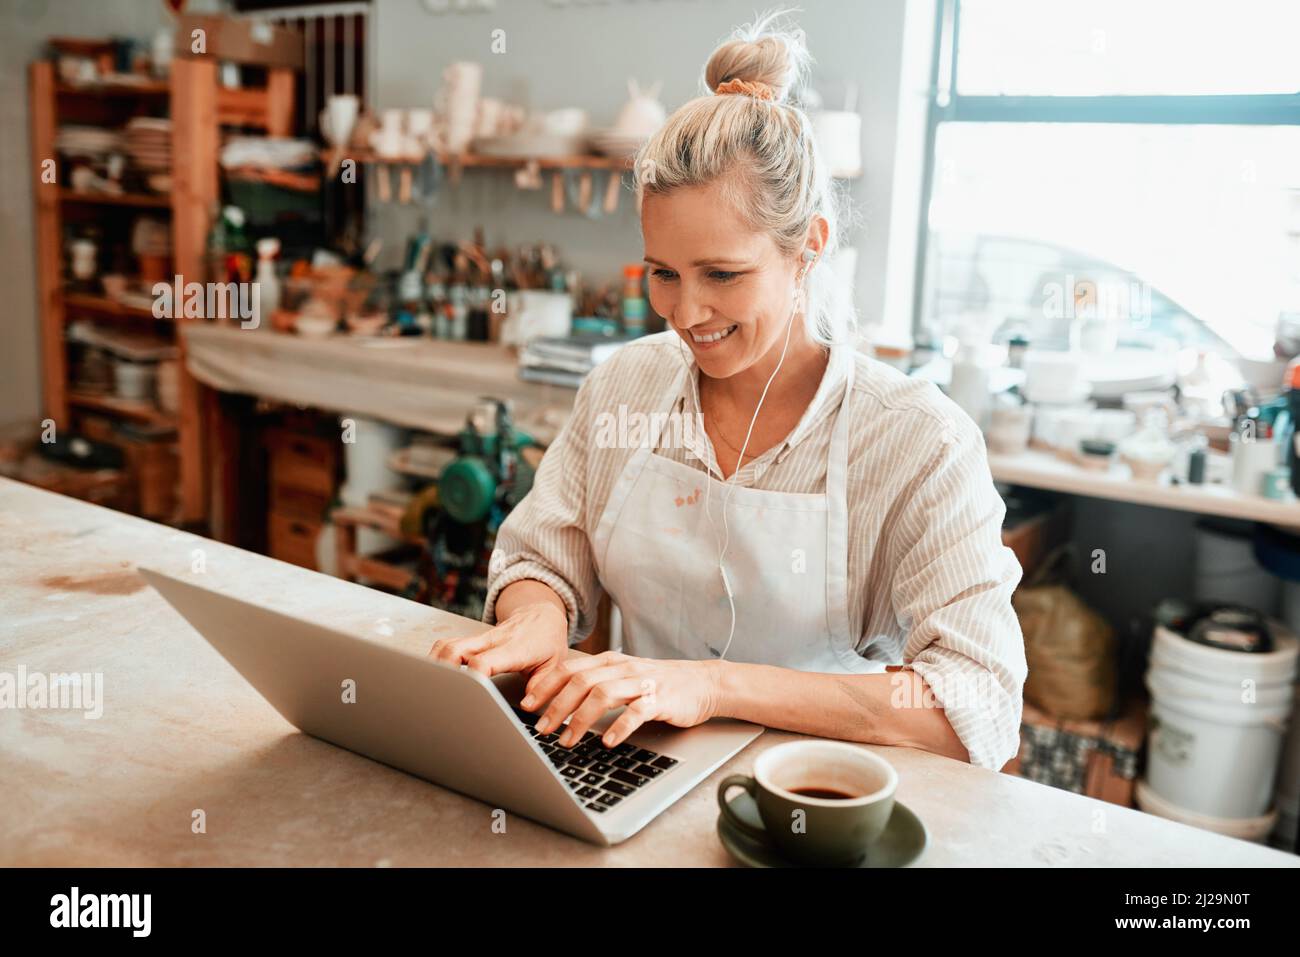 Ich versuche, mit meinen Online-Verkäufen Schritt zu halten. Ausgeschnittene Aufnahme einer Kunsthandwerkerin mit einem Laptop in ihrer Werkstatt. Stockfoto